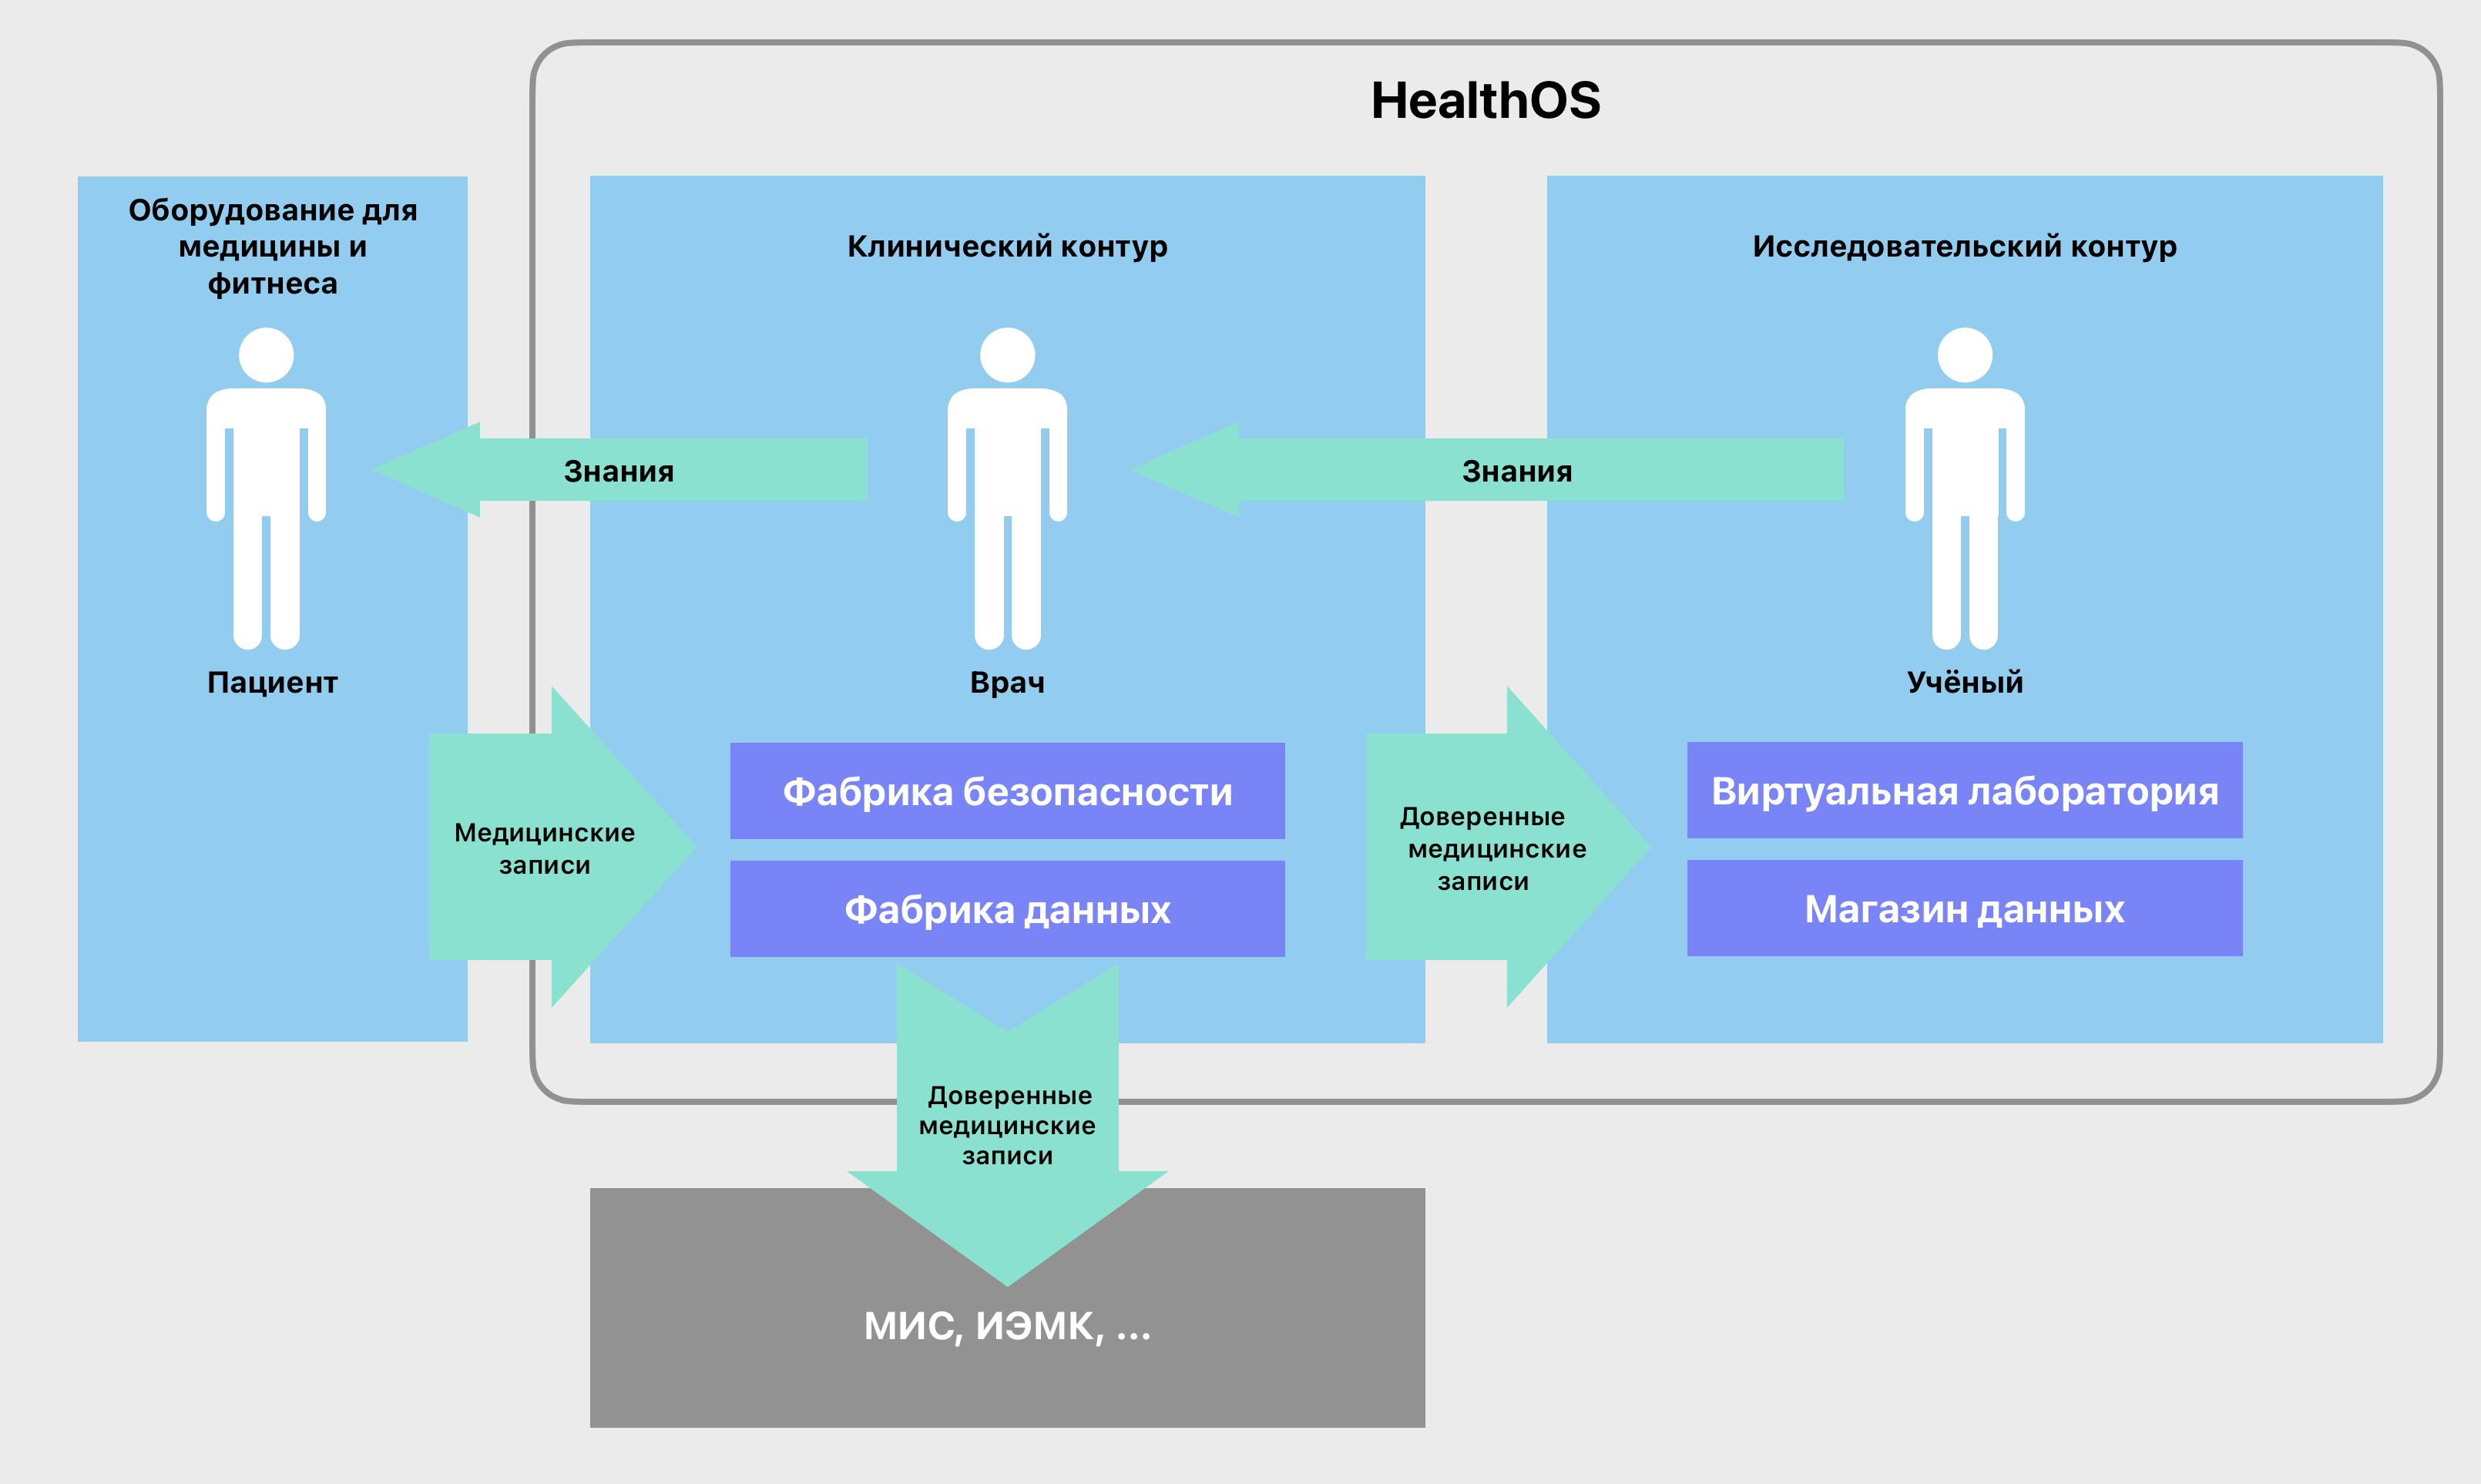 Медицинская аналитическая платформа HealthOS